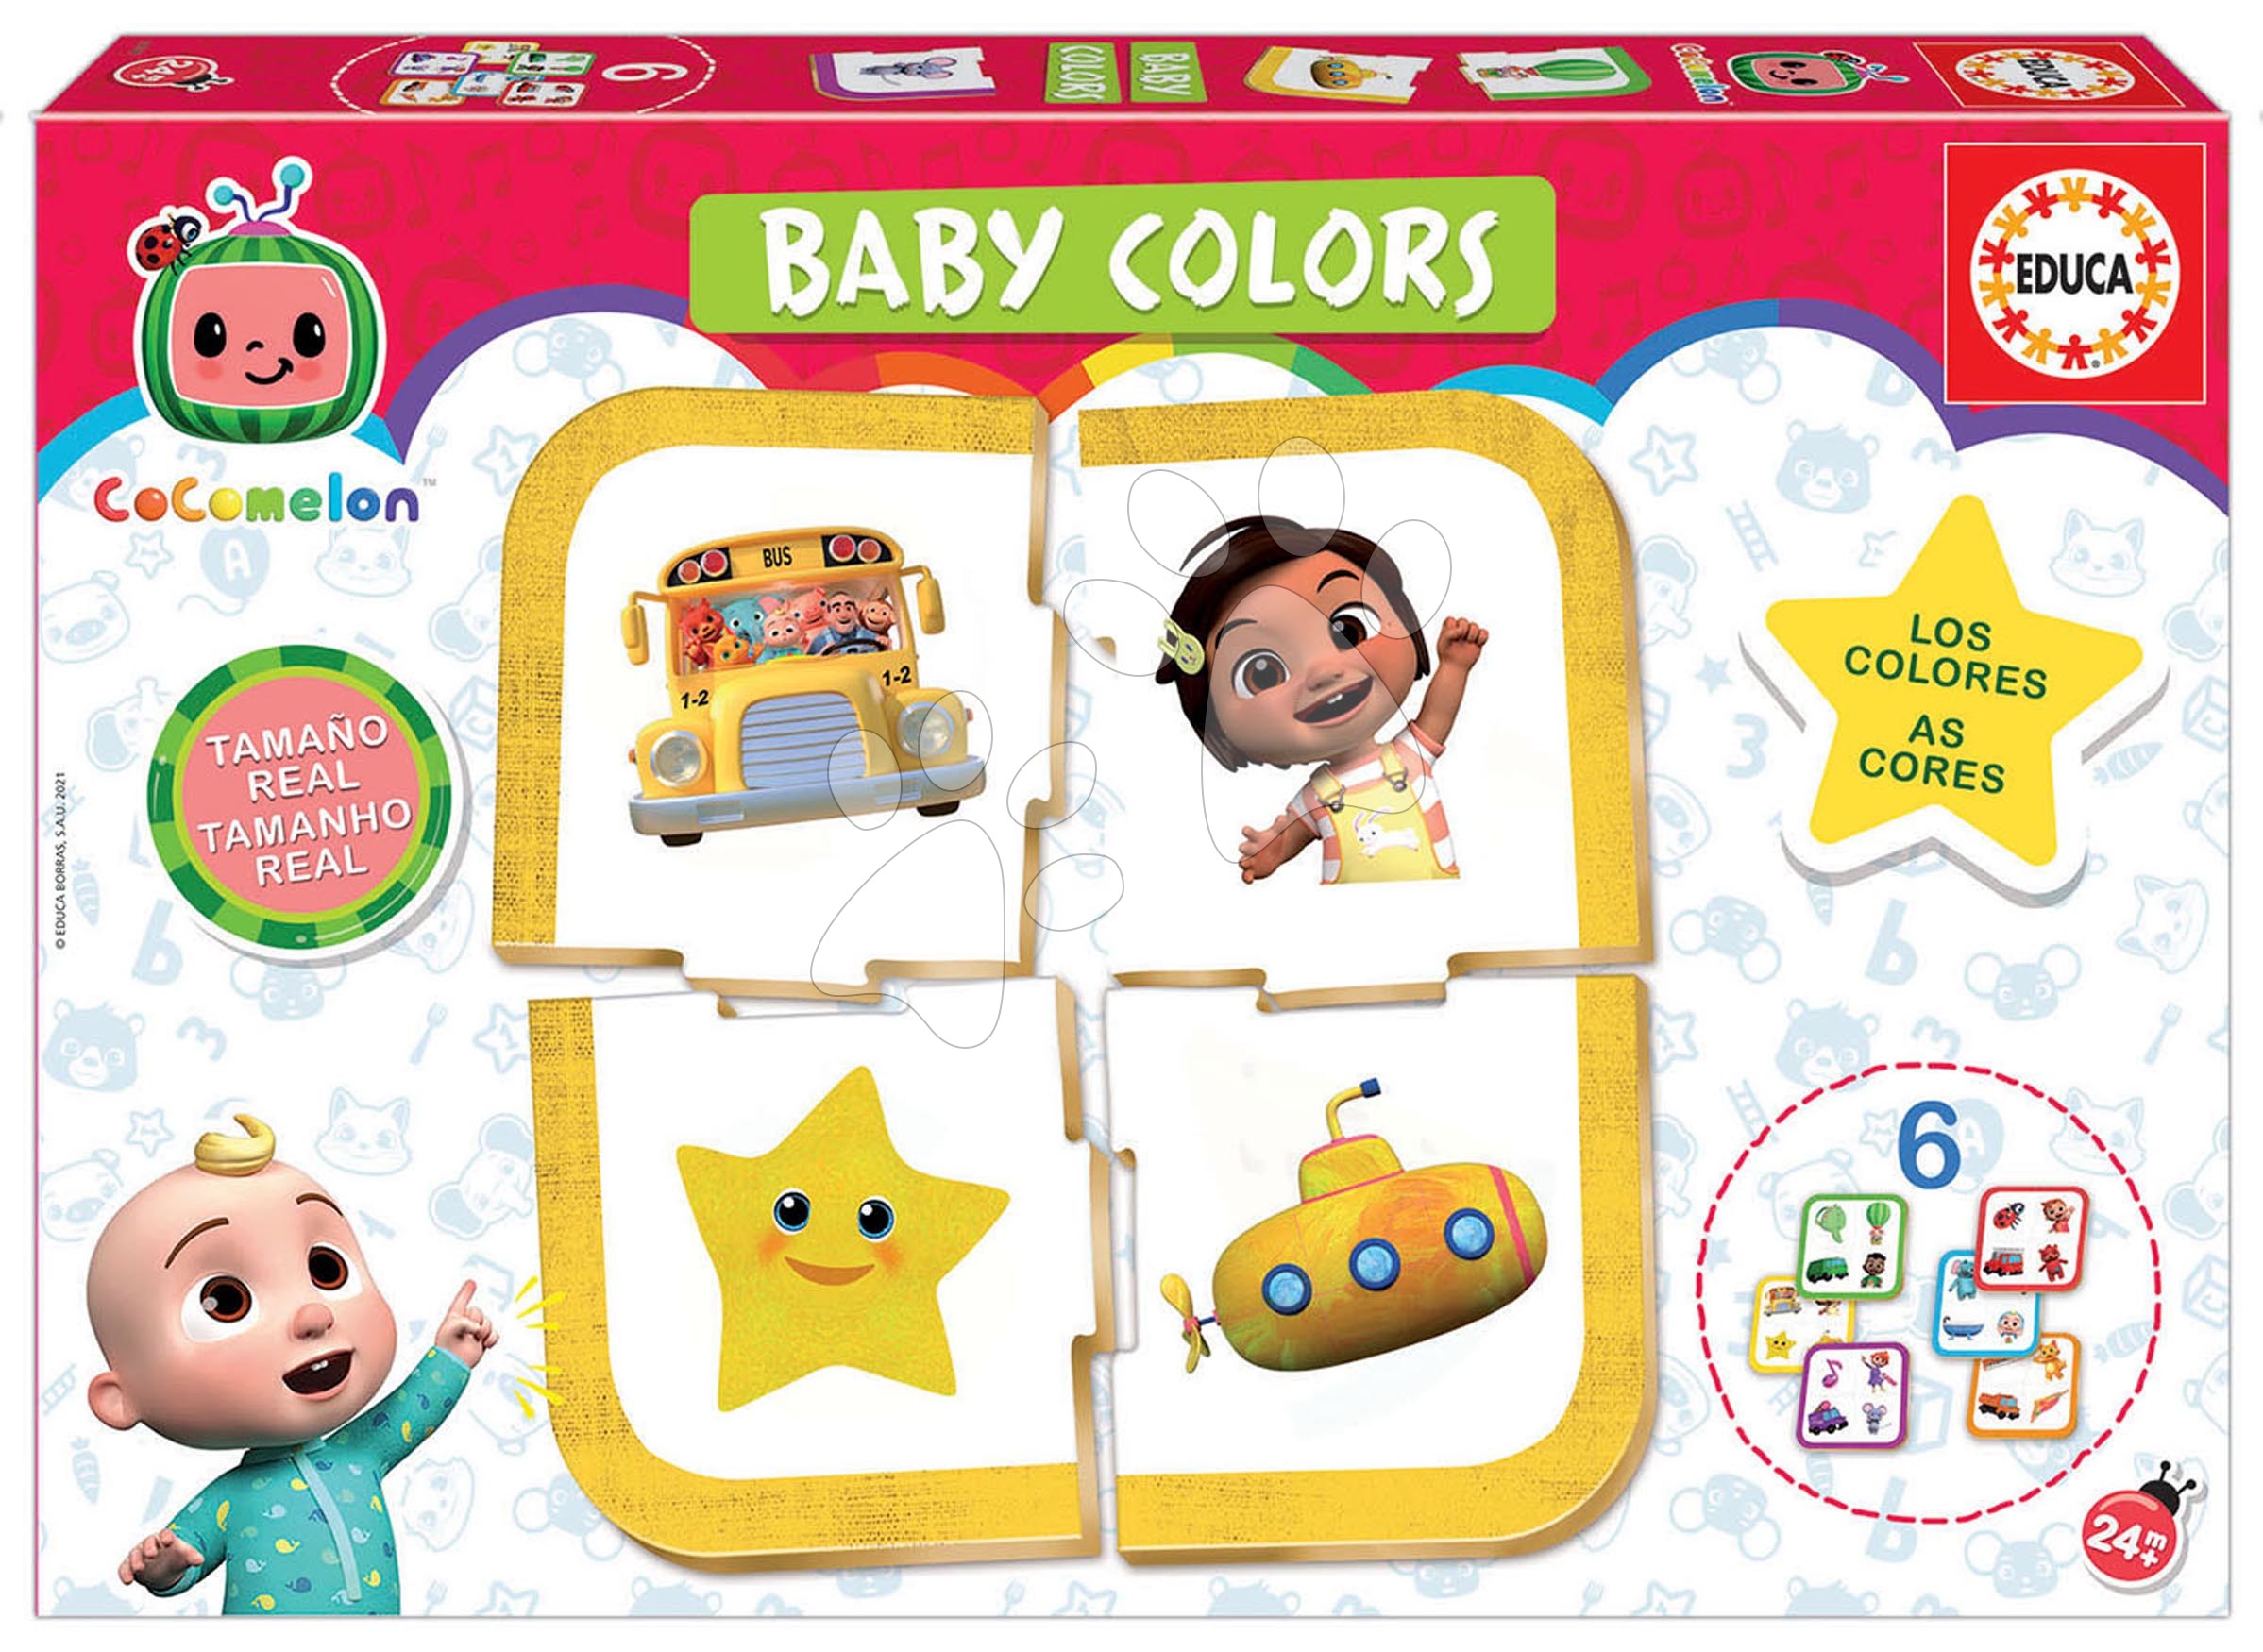 Puzzle für die Kleinsten - Ein Lernspiel für die Kleinsten Baby Colours Cocomeloon Educa Wir lernen Farben – ab 24 Monaten EDU19134